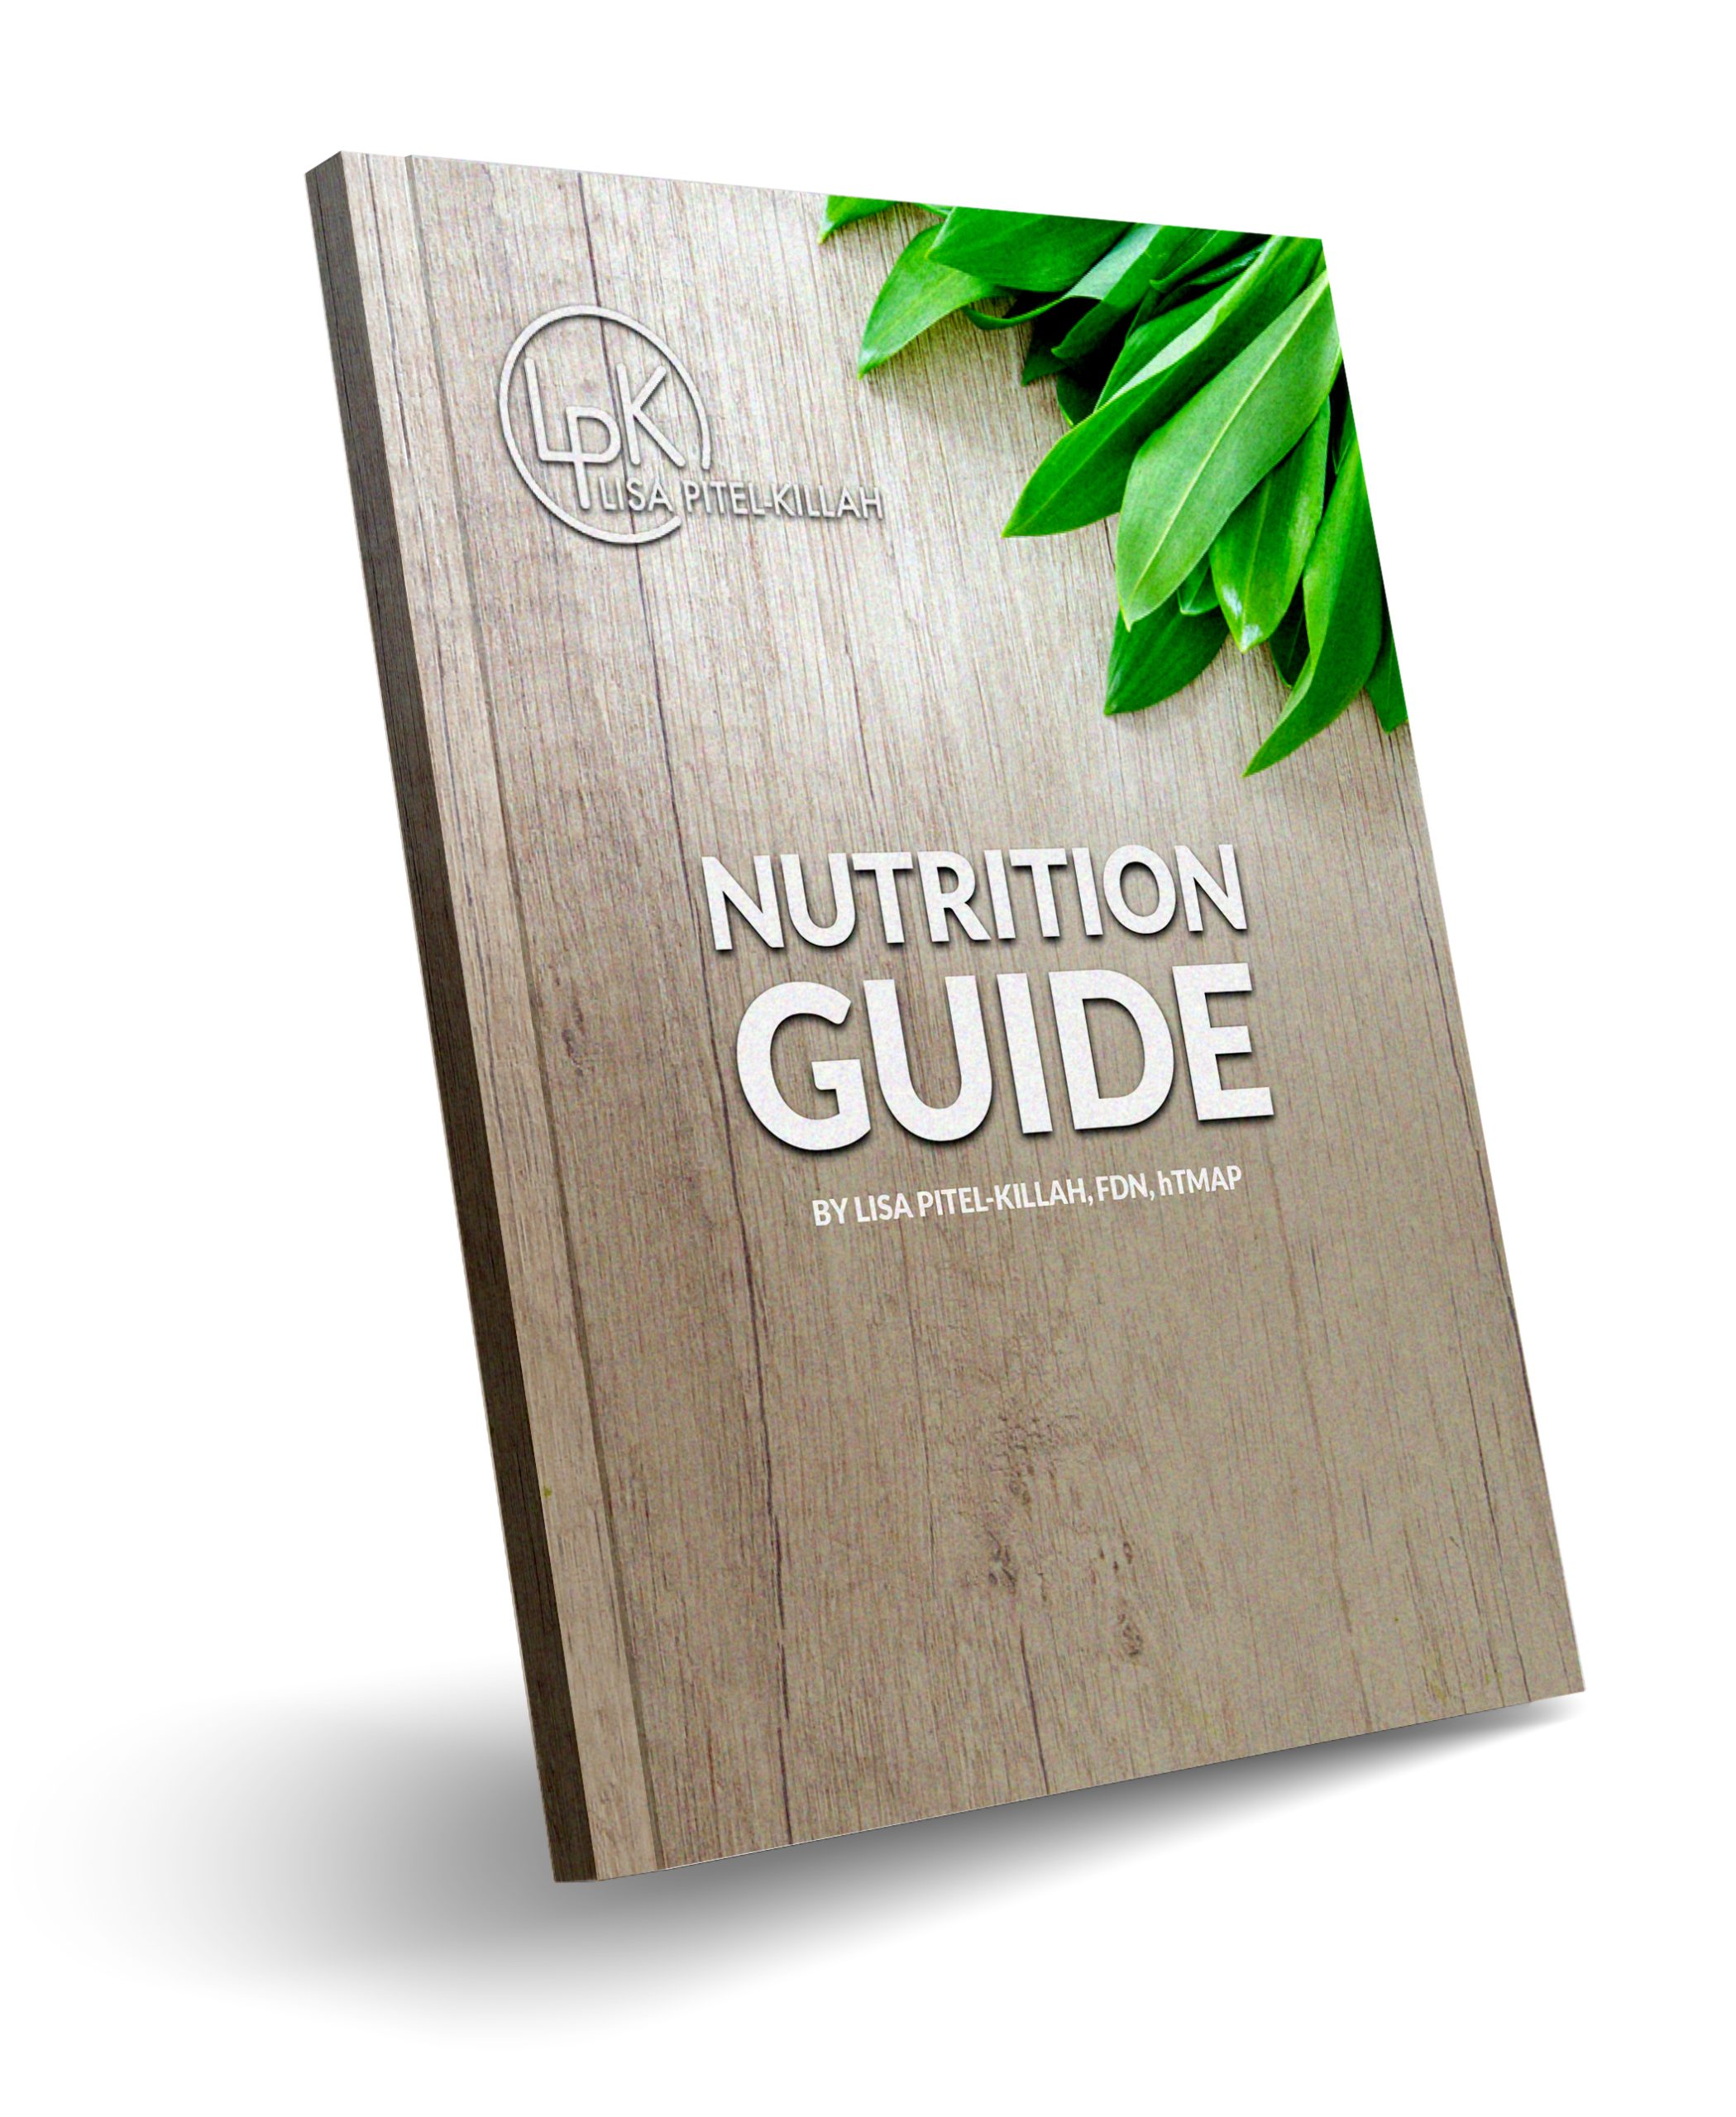 LPK Nutrition Guide book